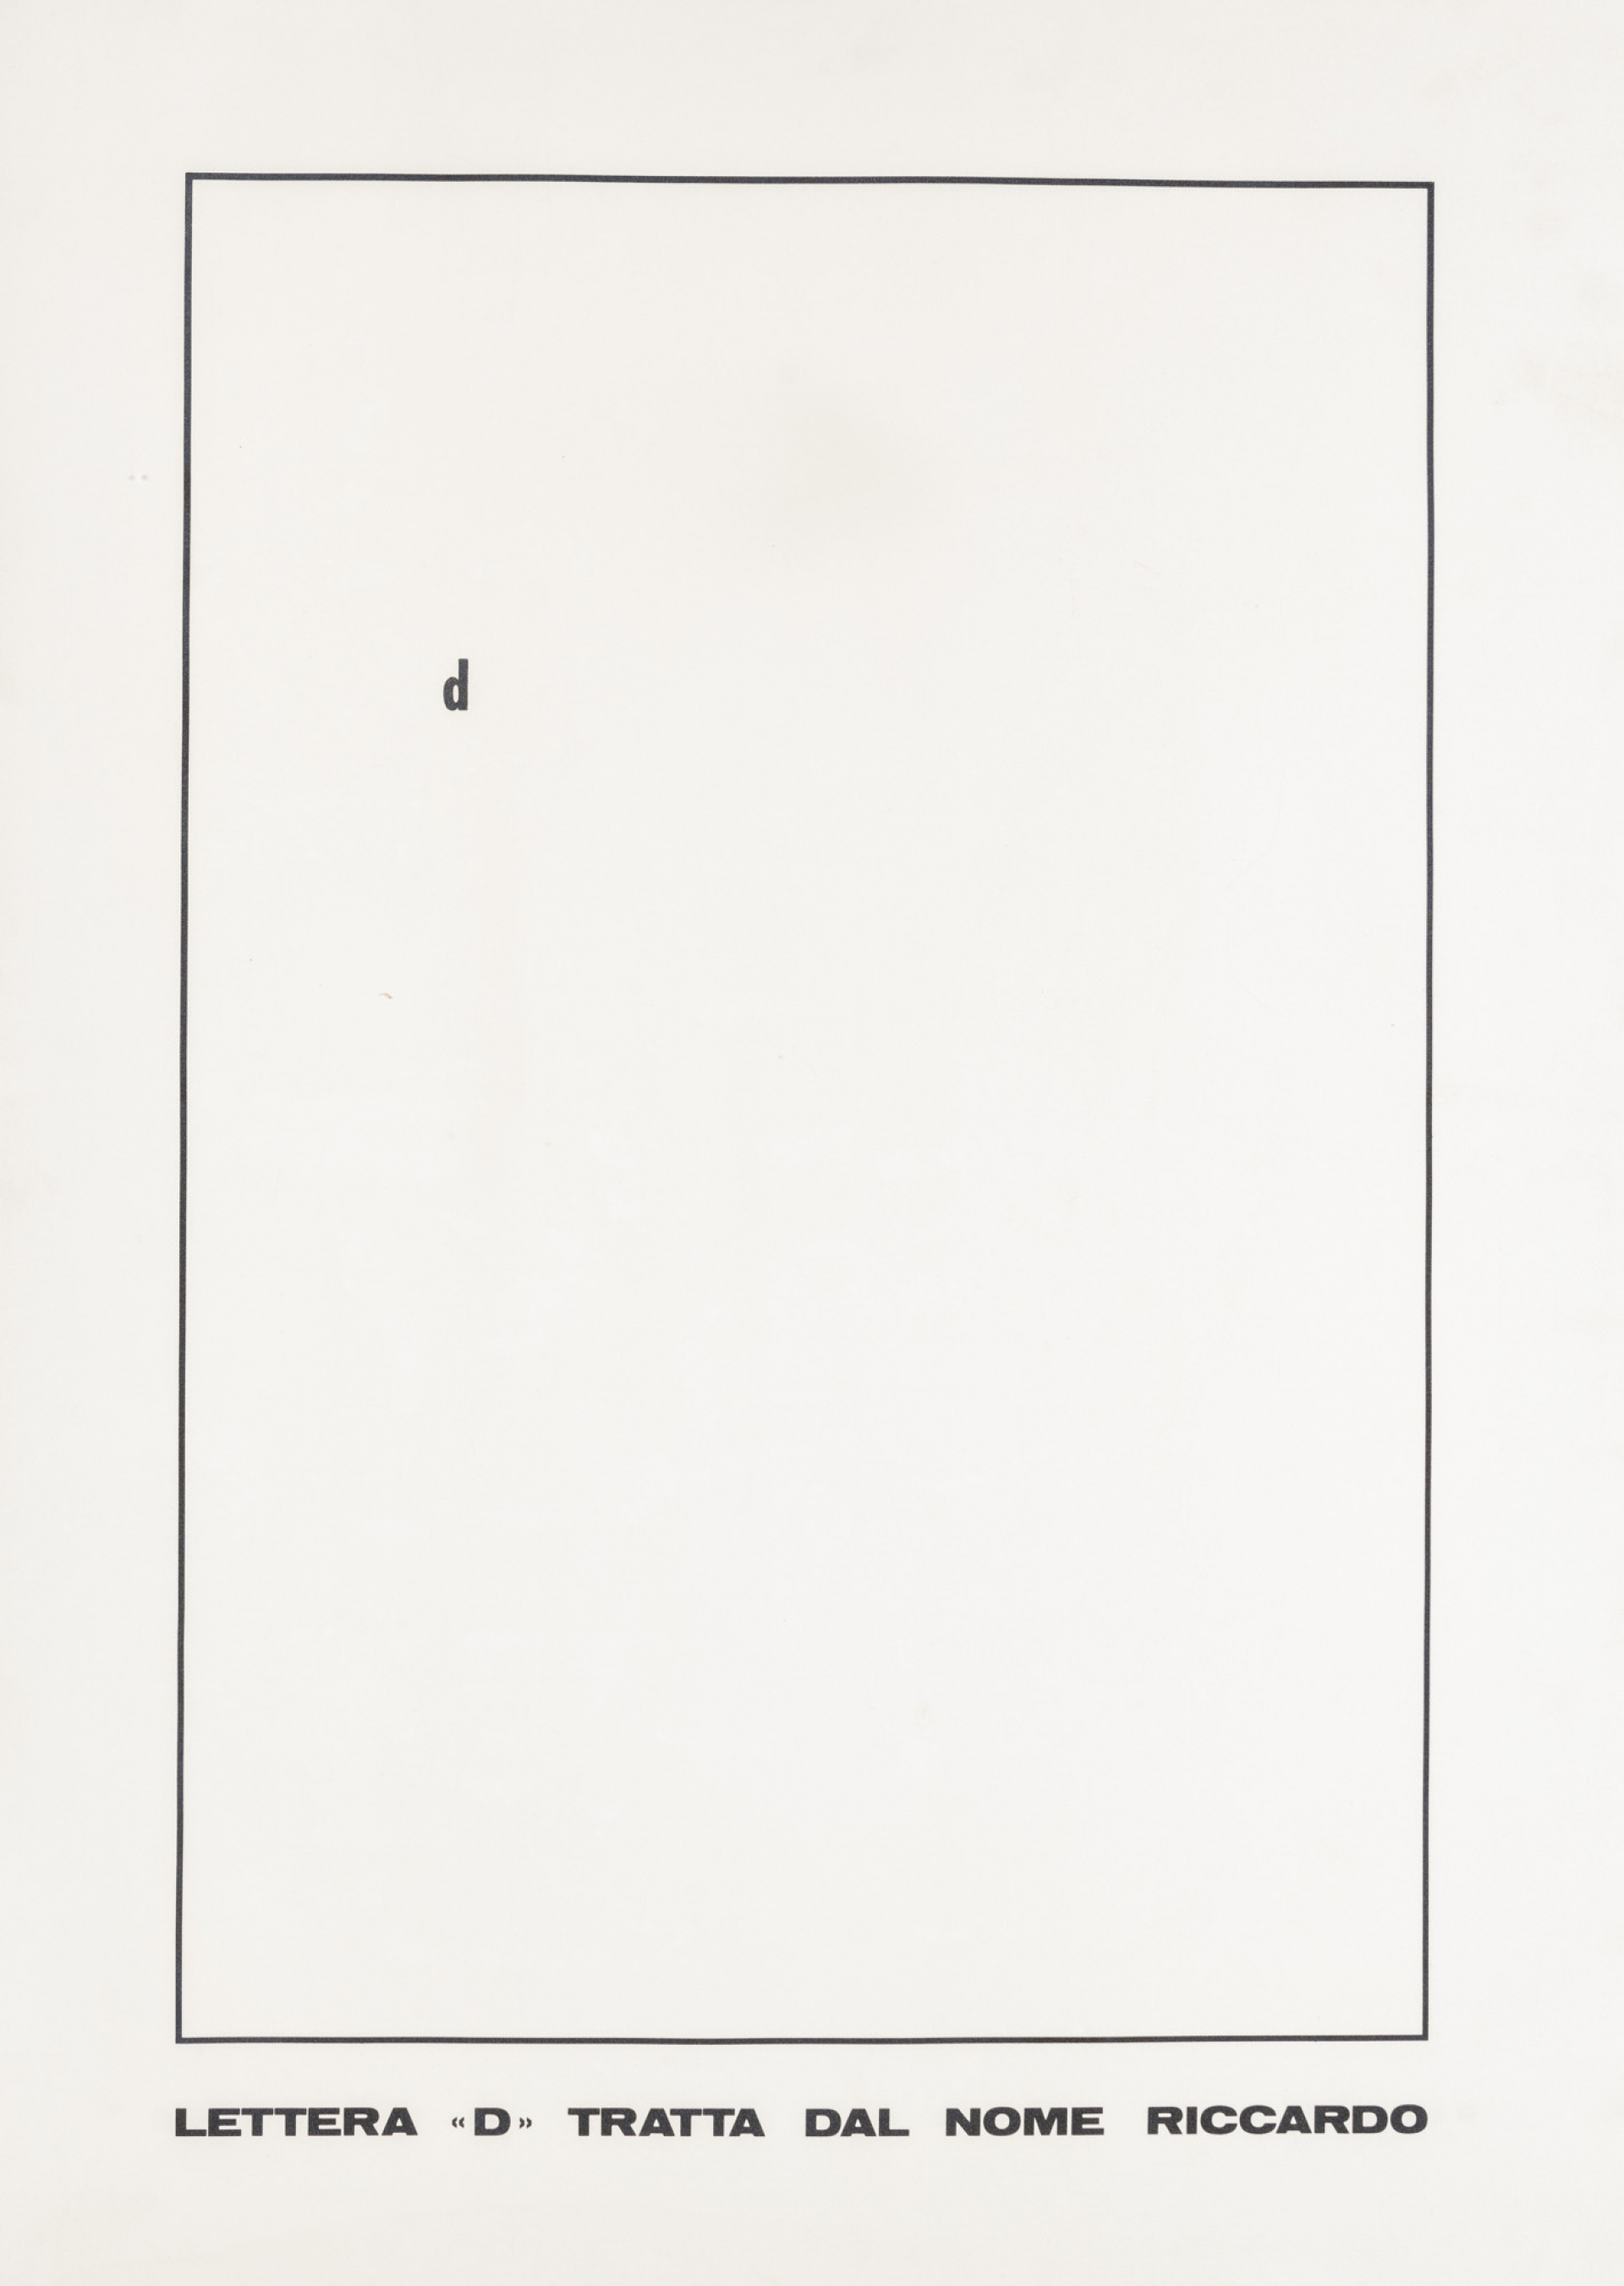 Lettera “D” tratta dal nome Riccardo by Emilio Isgrò, 1973